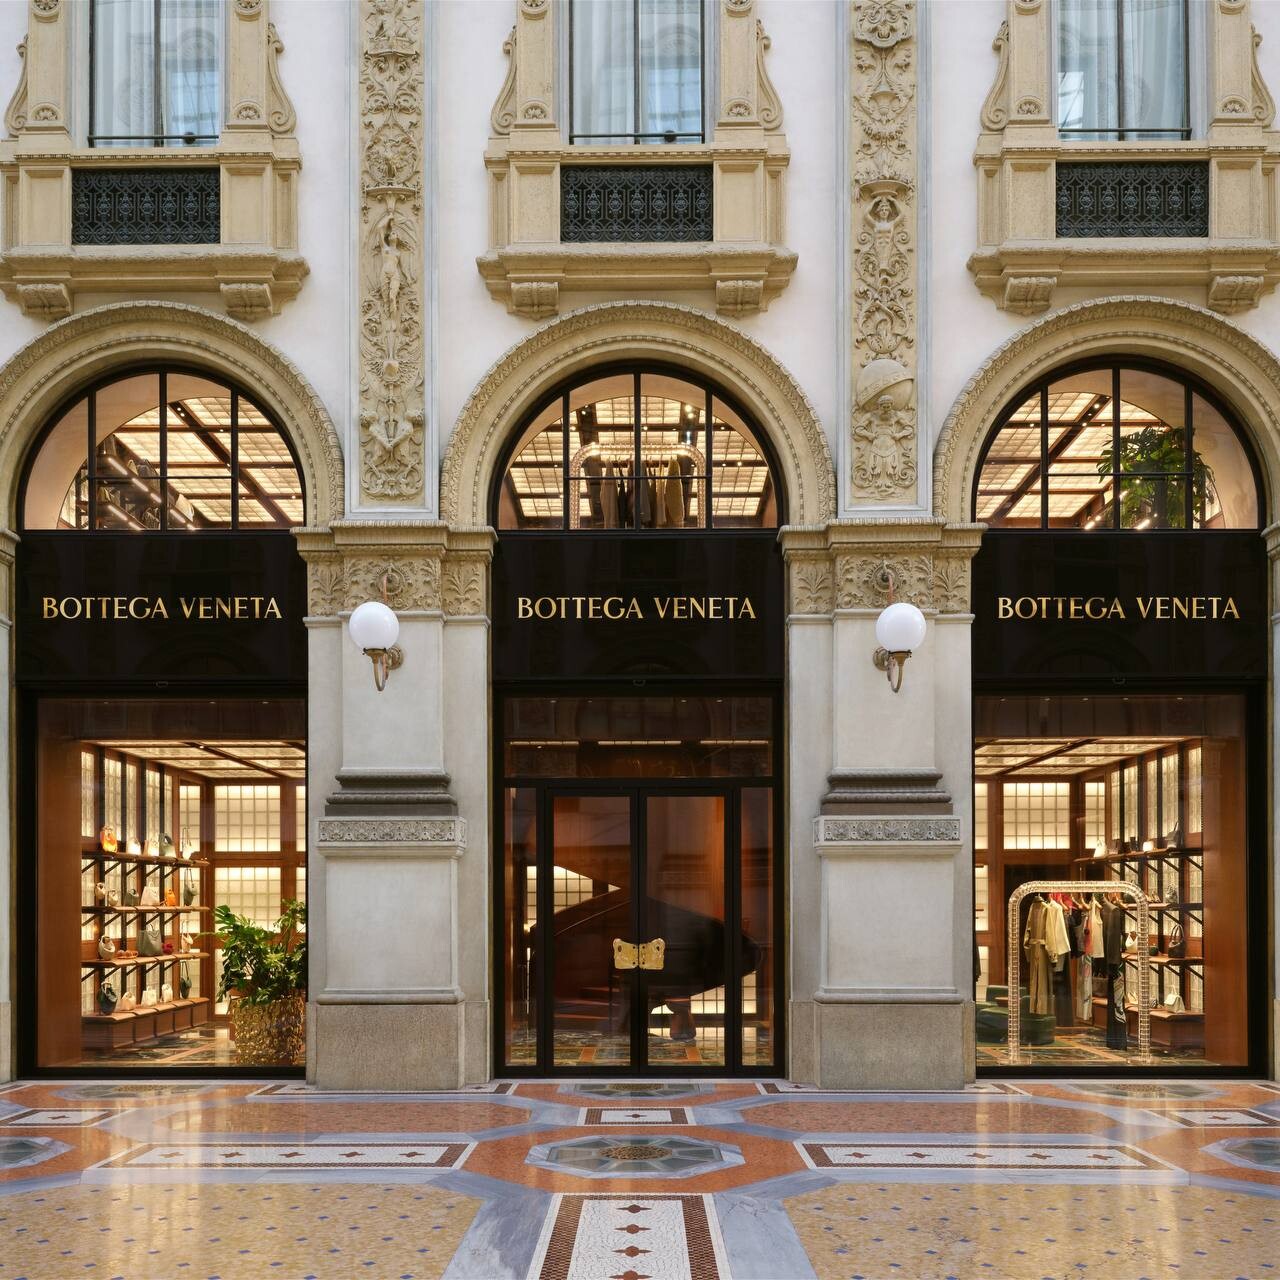 Матье Блази открывает новый магазин Bottega Veneta в Милане (фото 3)